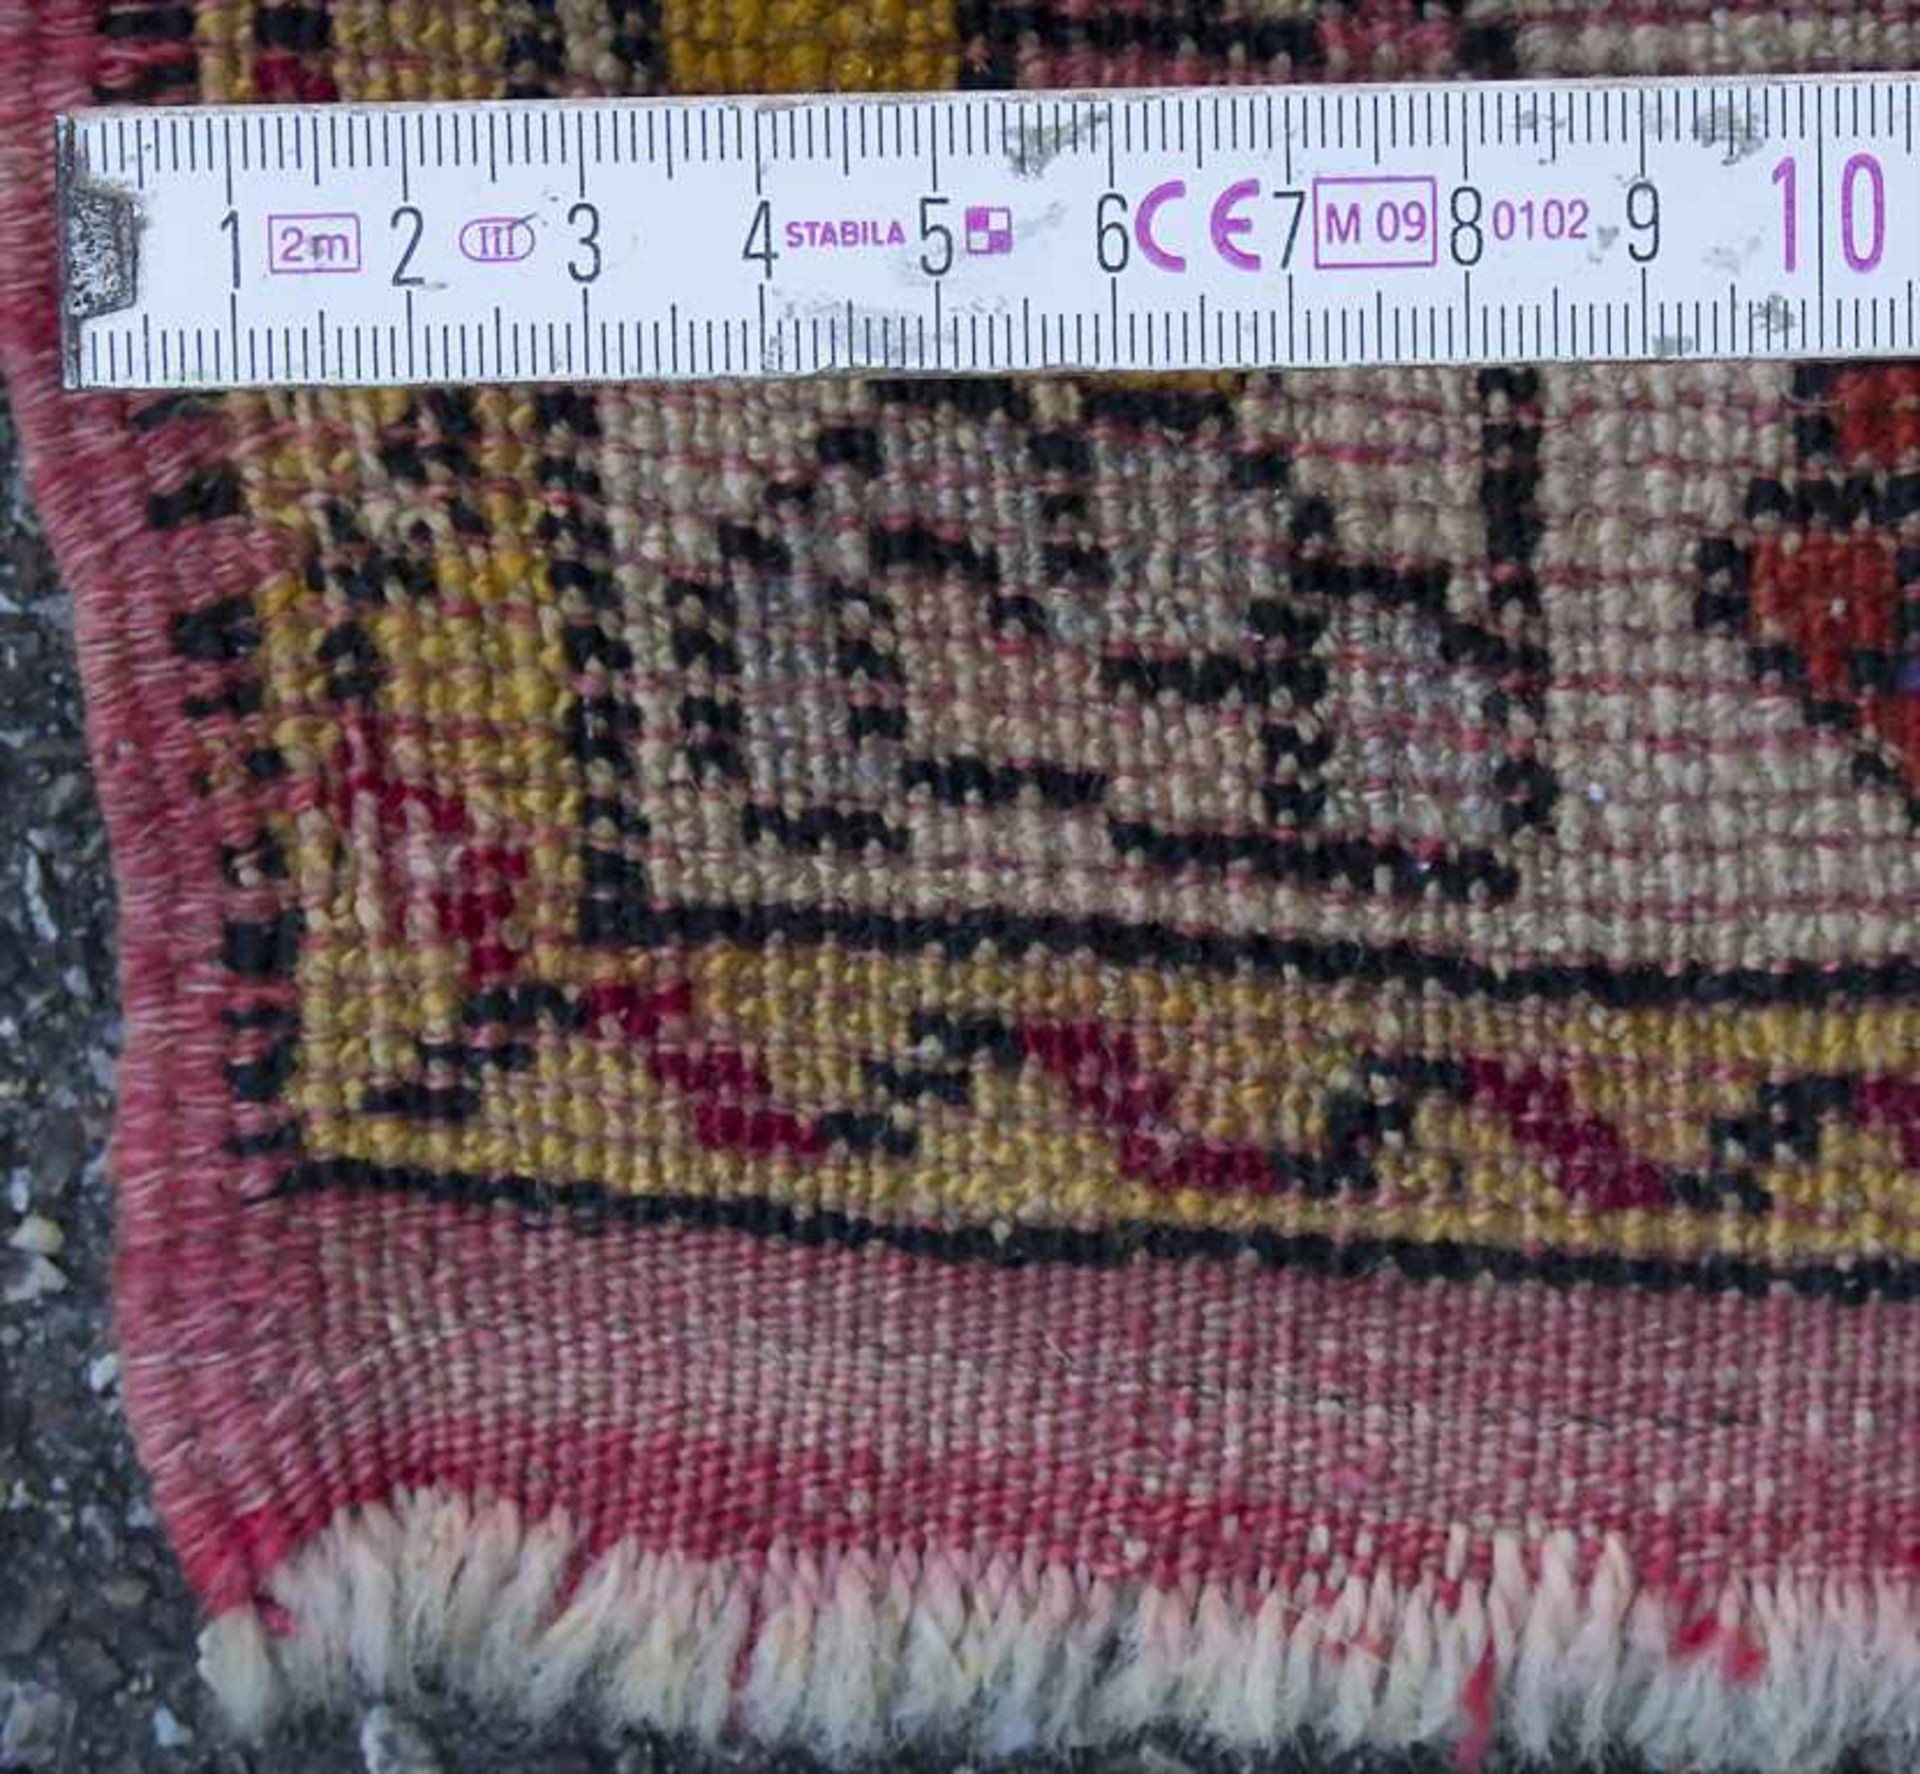 Kaukasischer Teppich / A caucasian carpetMaterial: Wolle auf Wolle, Maße: 80 x 78 cm, Zustand: gut - Bild 7 aus 7